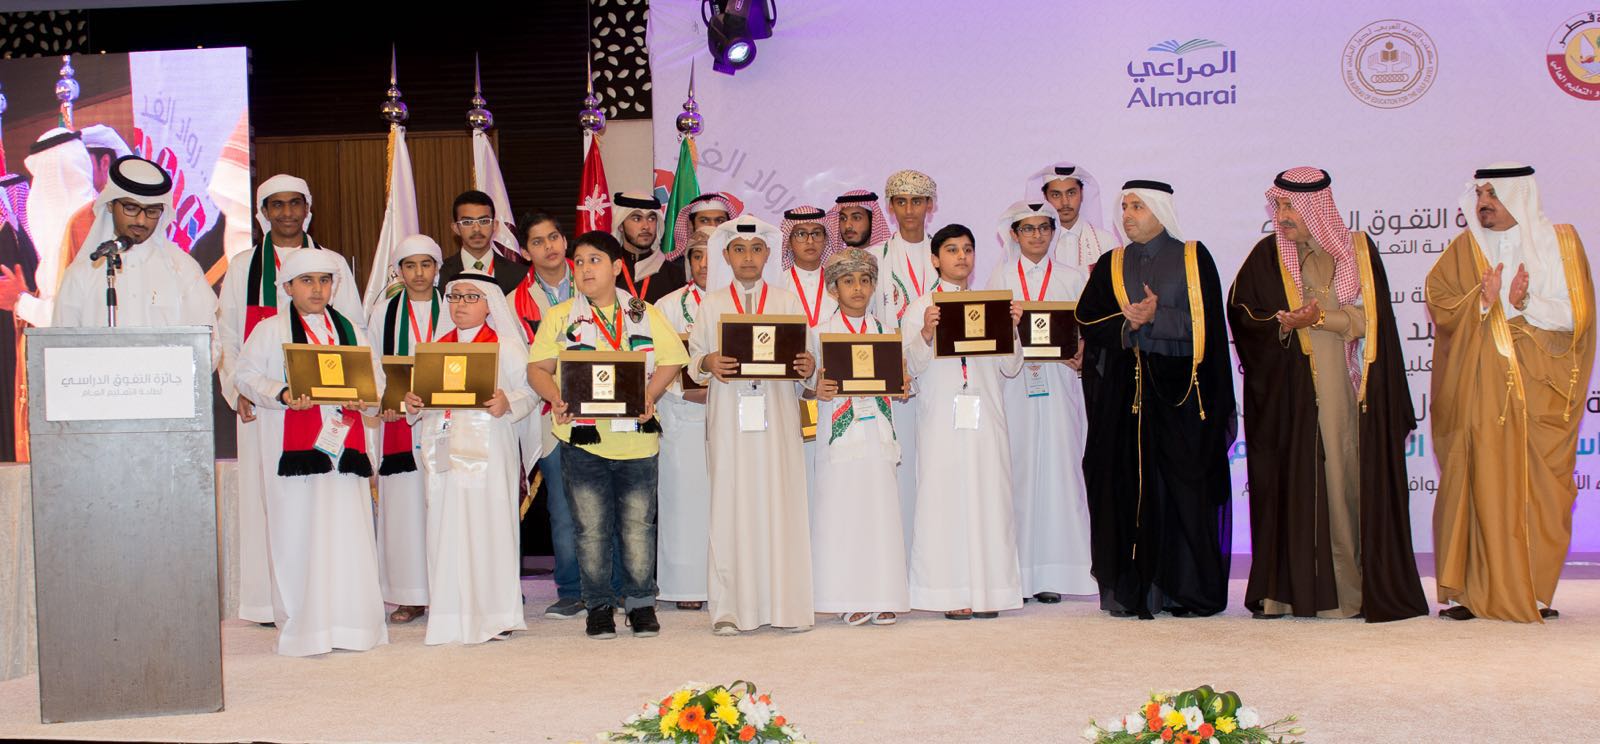 محمد باحارث اول طالب من تعليم الليث يتوج بجائزة التفوق الدراسي على مستوى الخليج العربي (3)